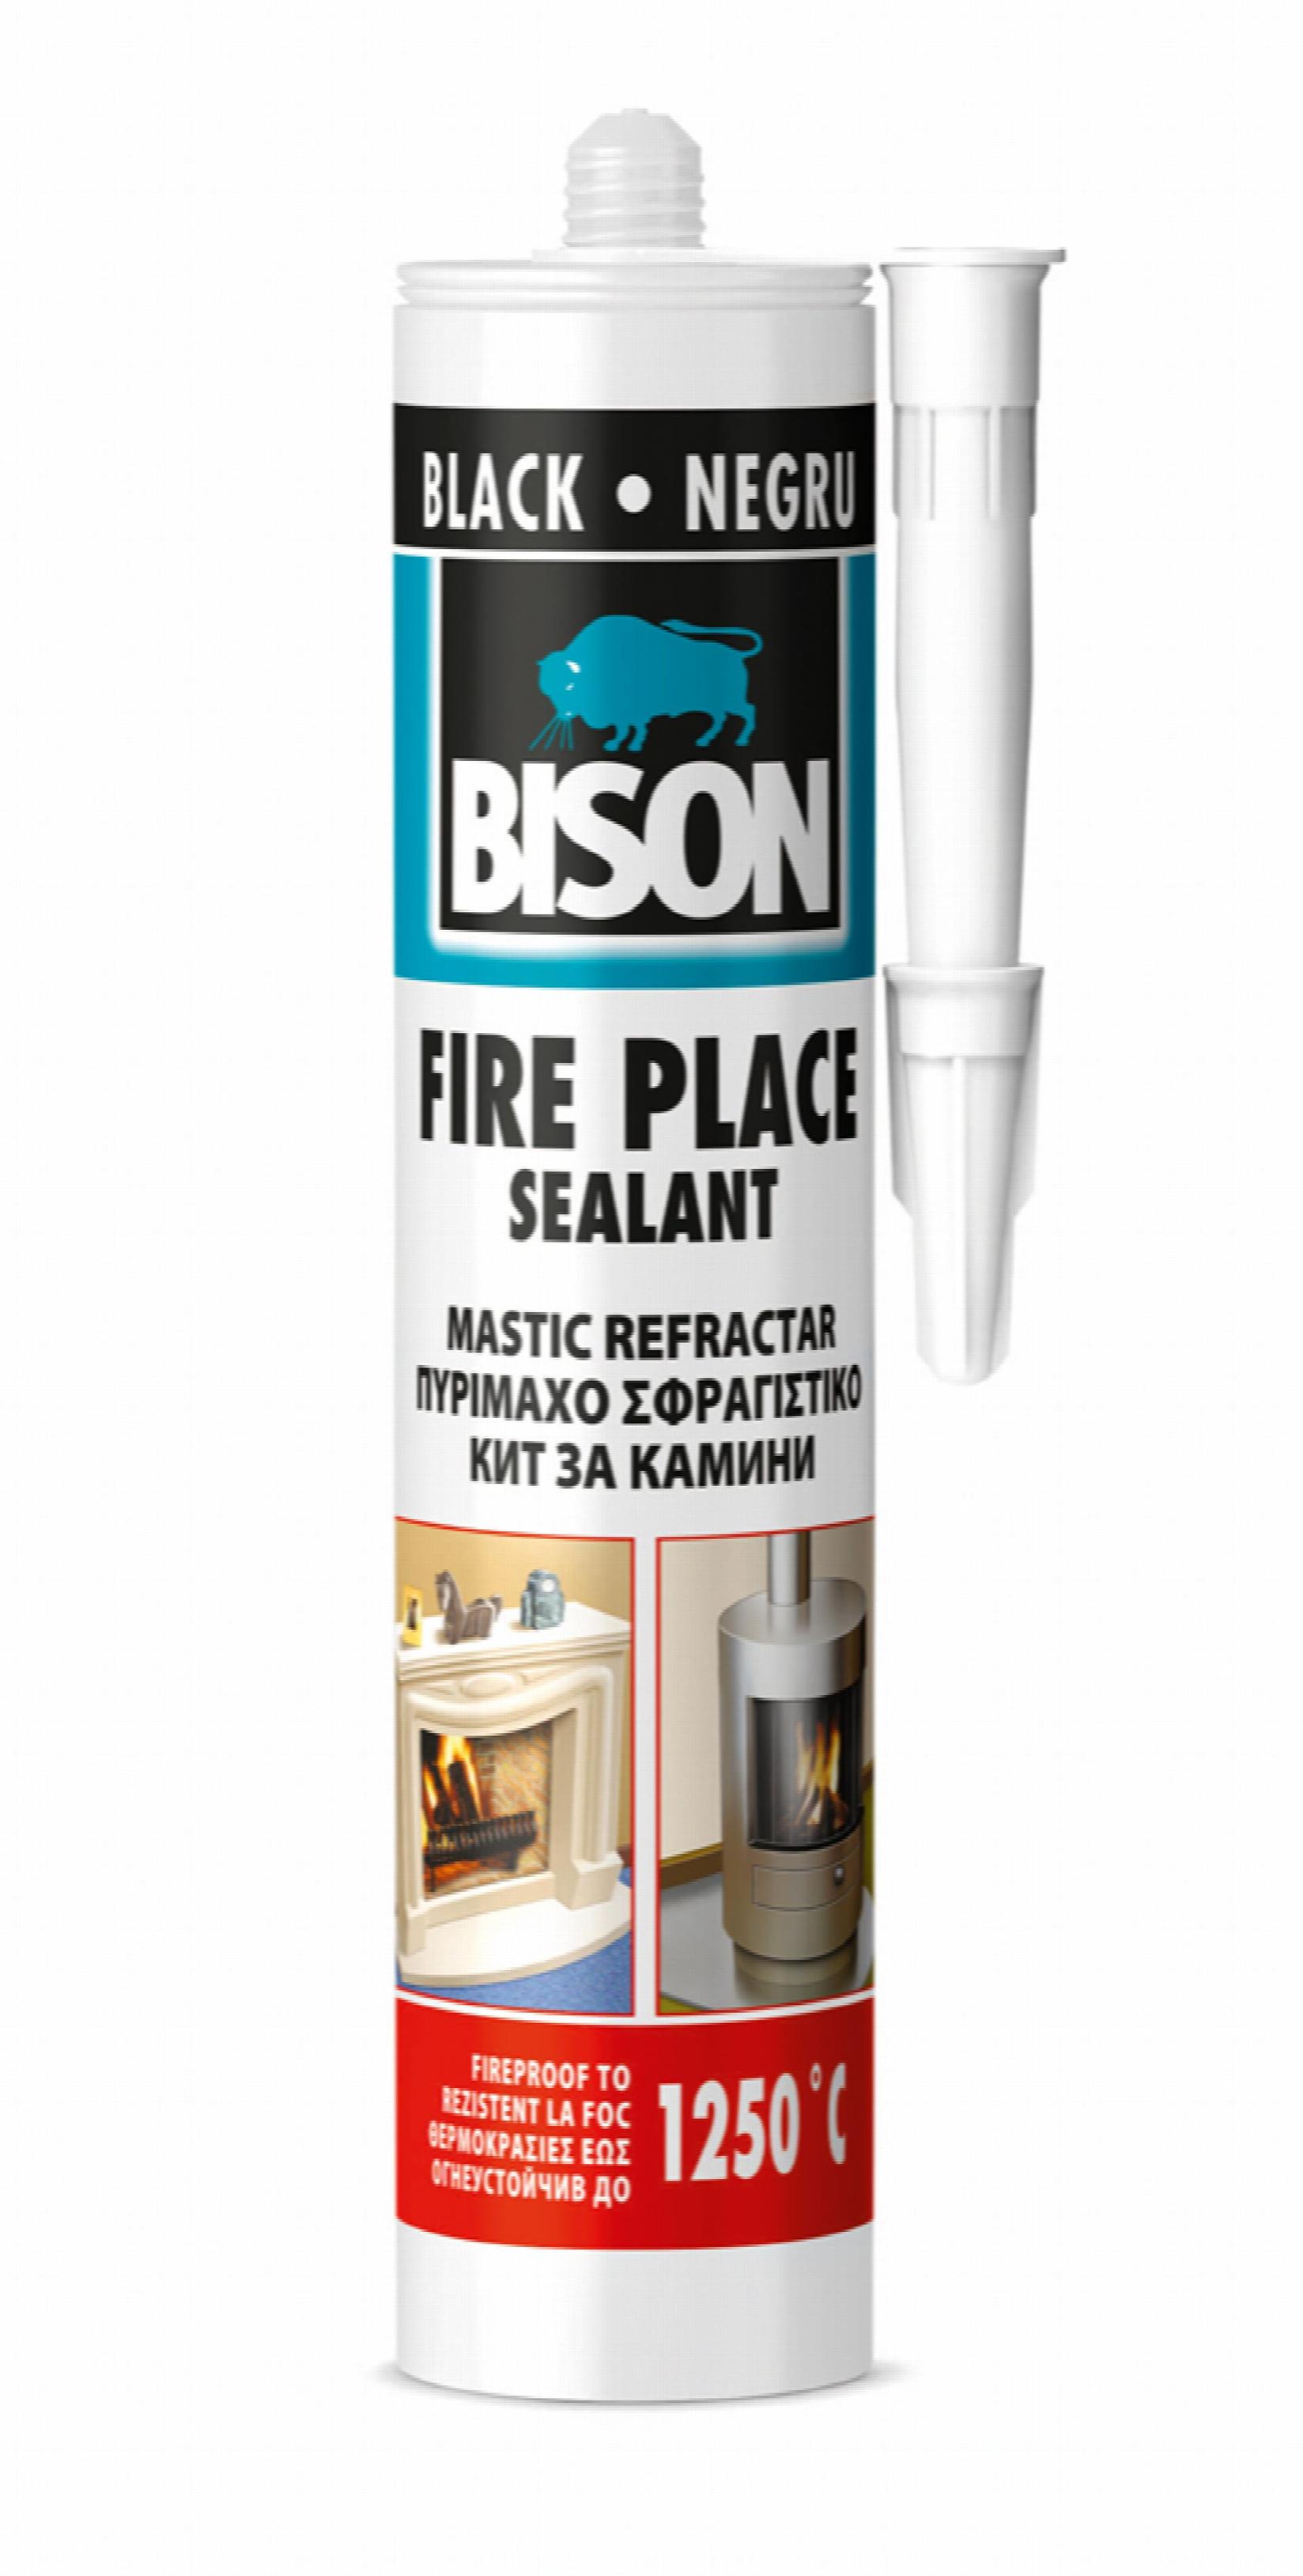 BISON Vatrostalni zaptivač Fire Place 1250°C 530 gr 176154